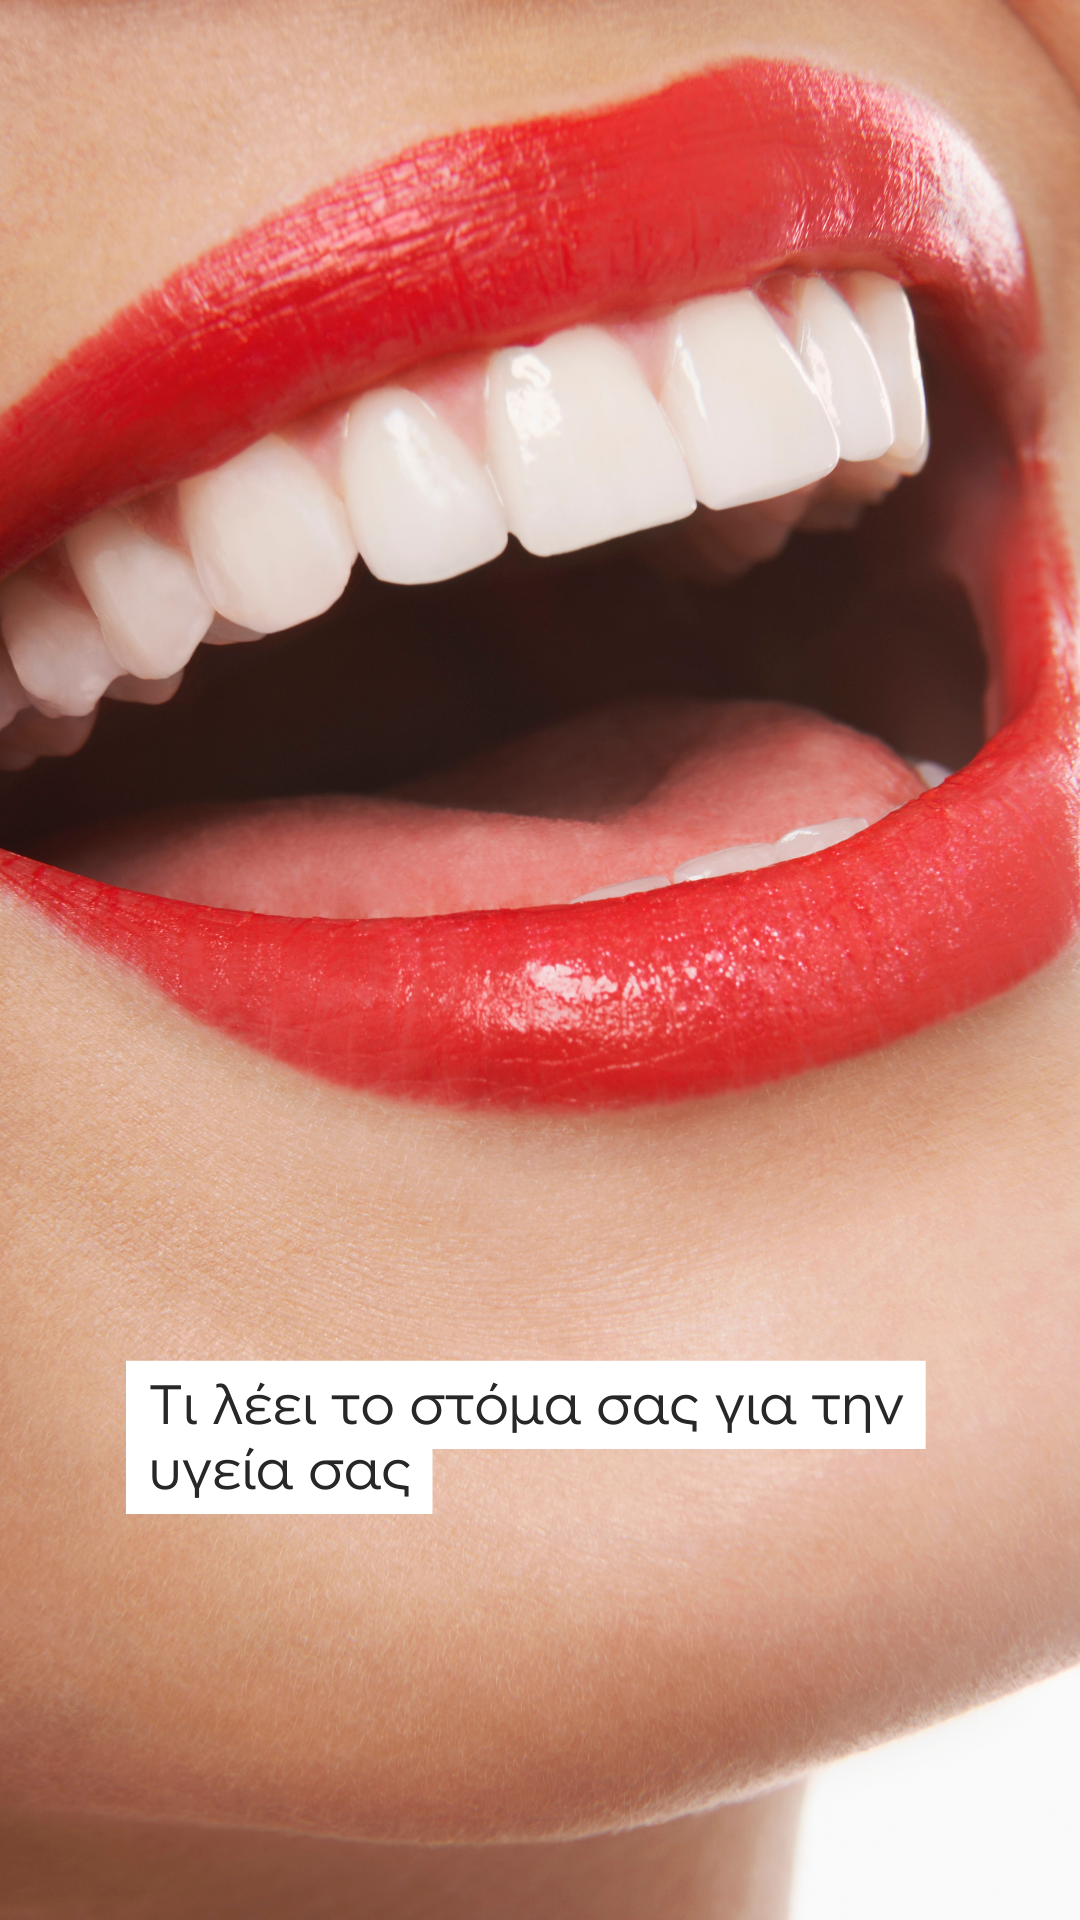 Από ματωμένα ούλα μέχρι κακοσμία: Τι λέει το στόμα σας για την υγεία σας – 6 συμπτώματα που δεν πρέπει να αγνοήσετε